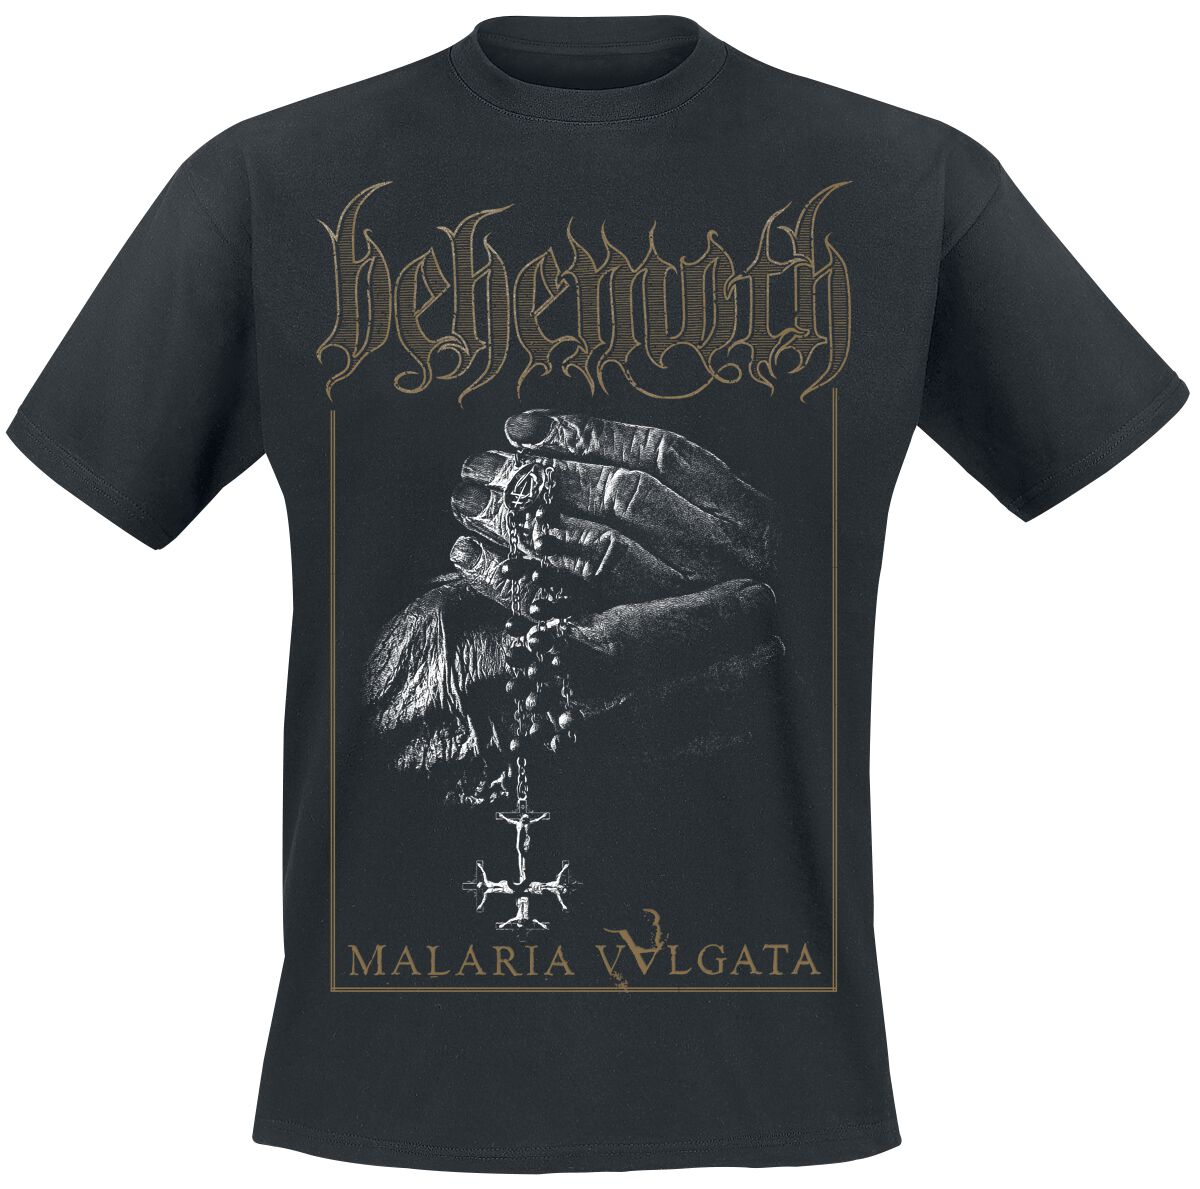 Behemoth T-Shirt - Malaria Vvlgata - S bis XXL - für Männer - Größe S - schwarz  - Lizenziertes Merchandise!